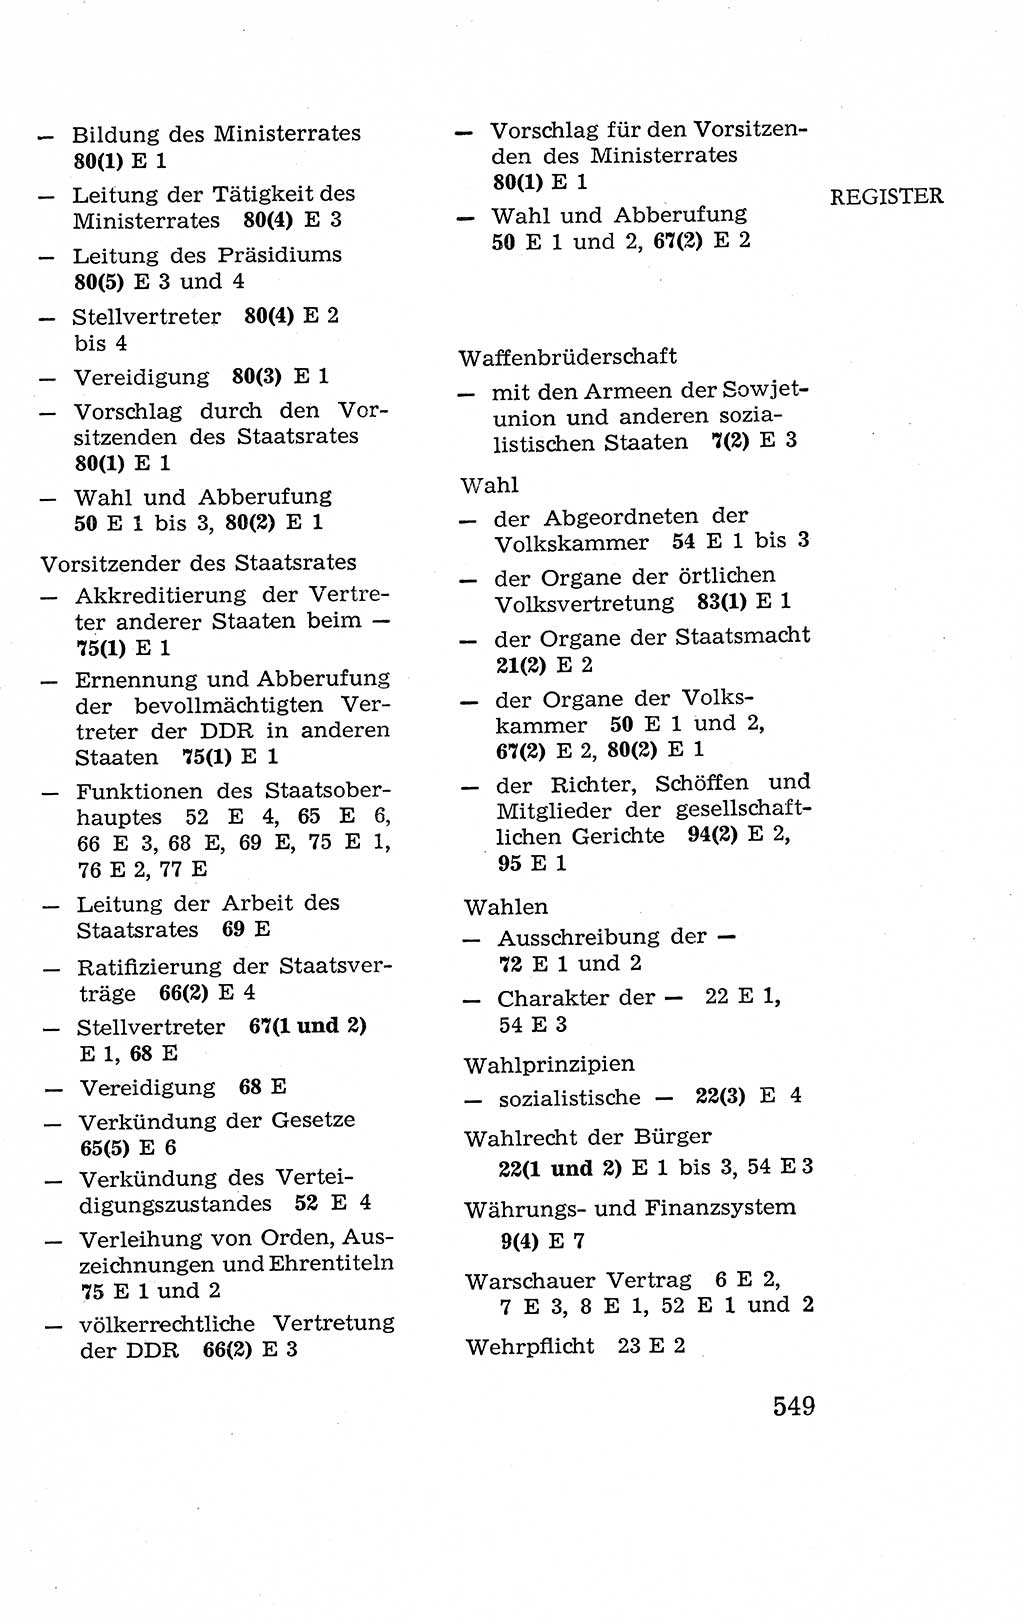 Verfassung der Deutschen Demokratischen Republik (DDR), Dokumente, Kommentar 1969, Band 2, Seite 549 (Verf. DDR Dok. Komm. 1969, Bd. 2, S. 549)